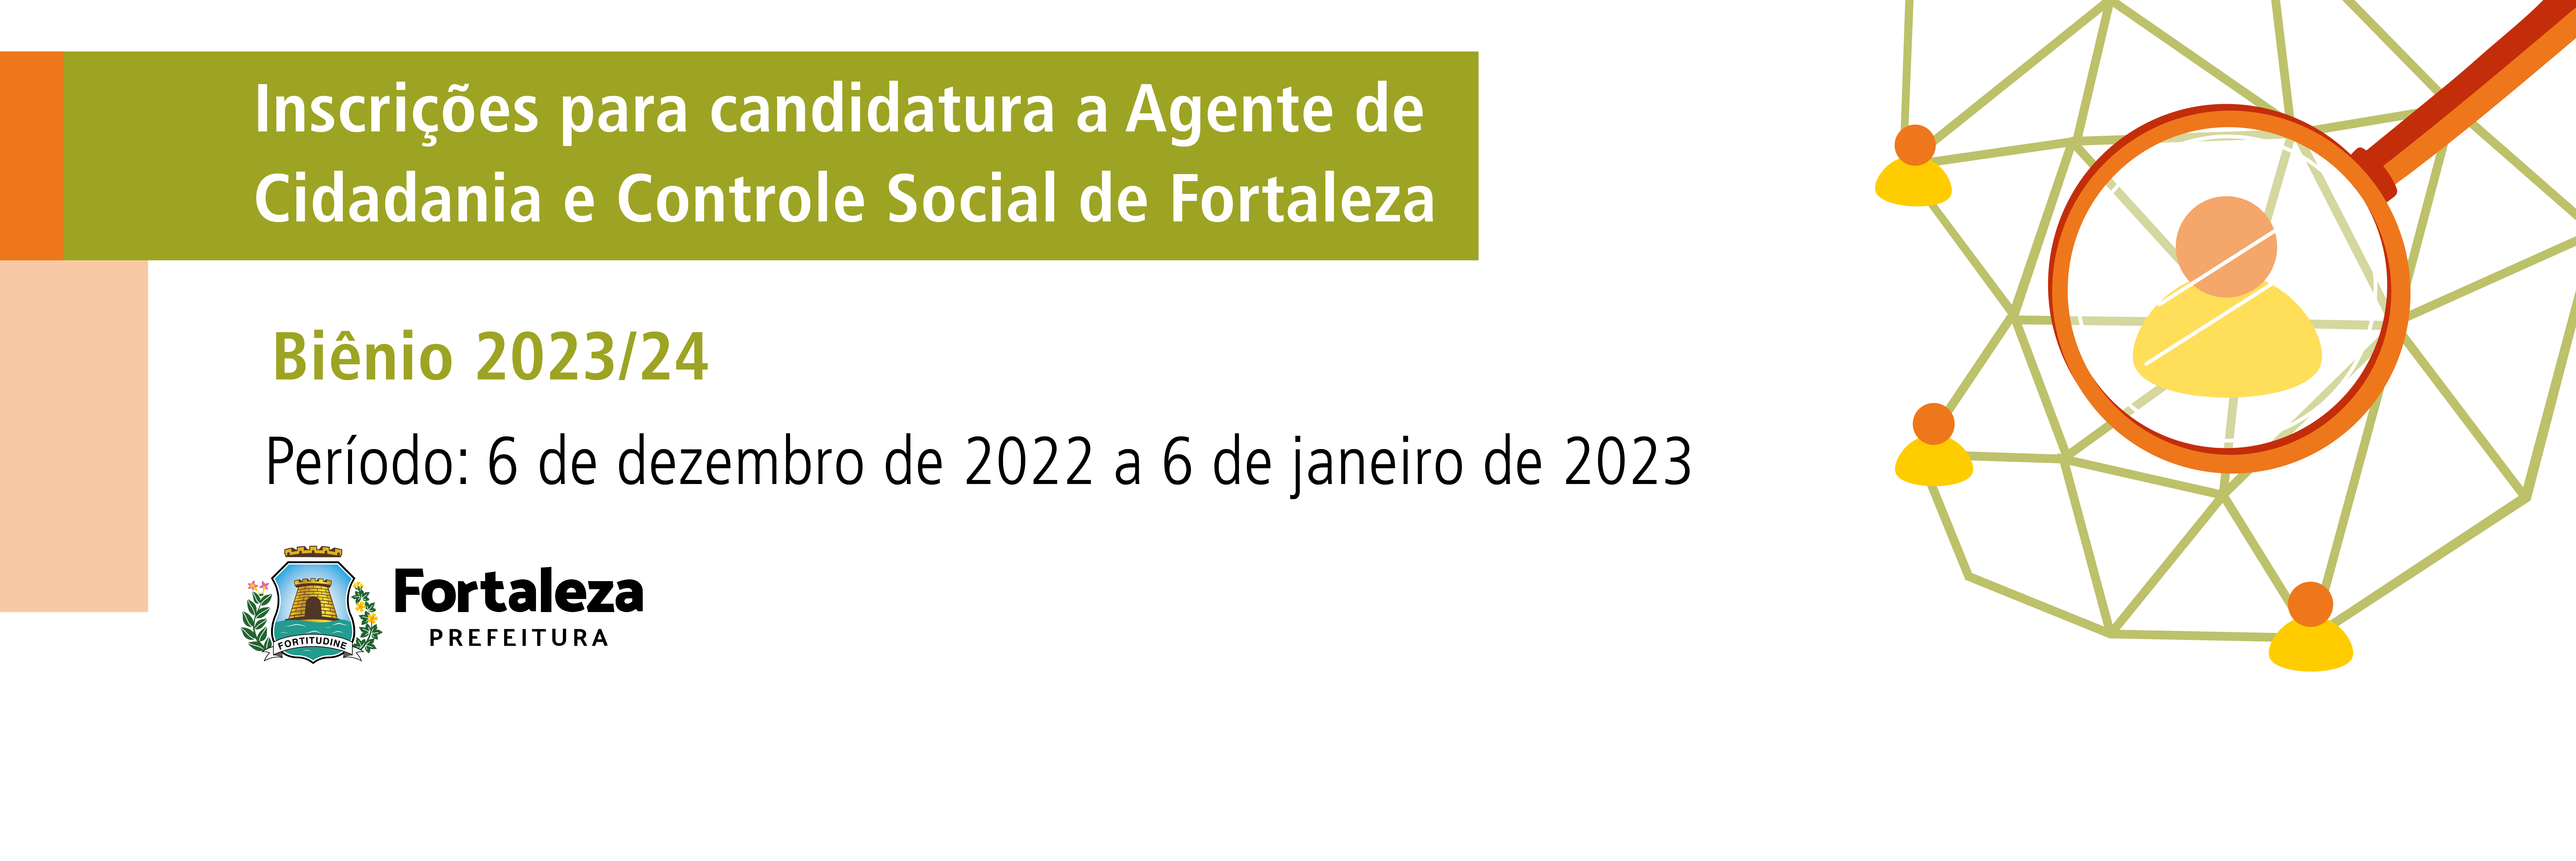 Prefeitura de Fortaleza recebe inscrições para agentes de cidadania 2023/24 que concorrerão nas eleições suplementares